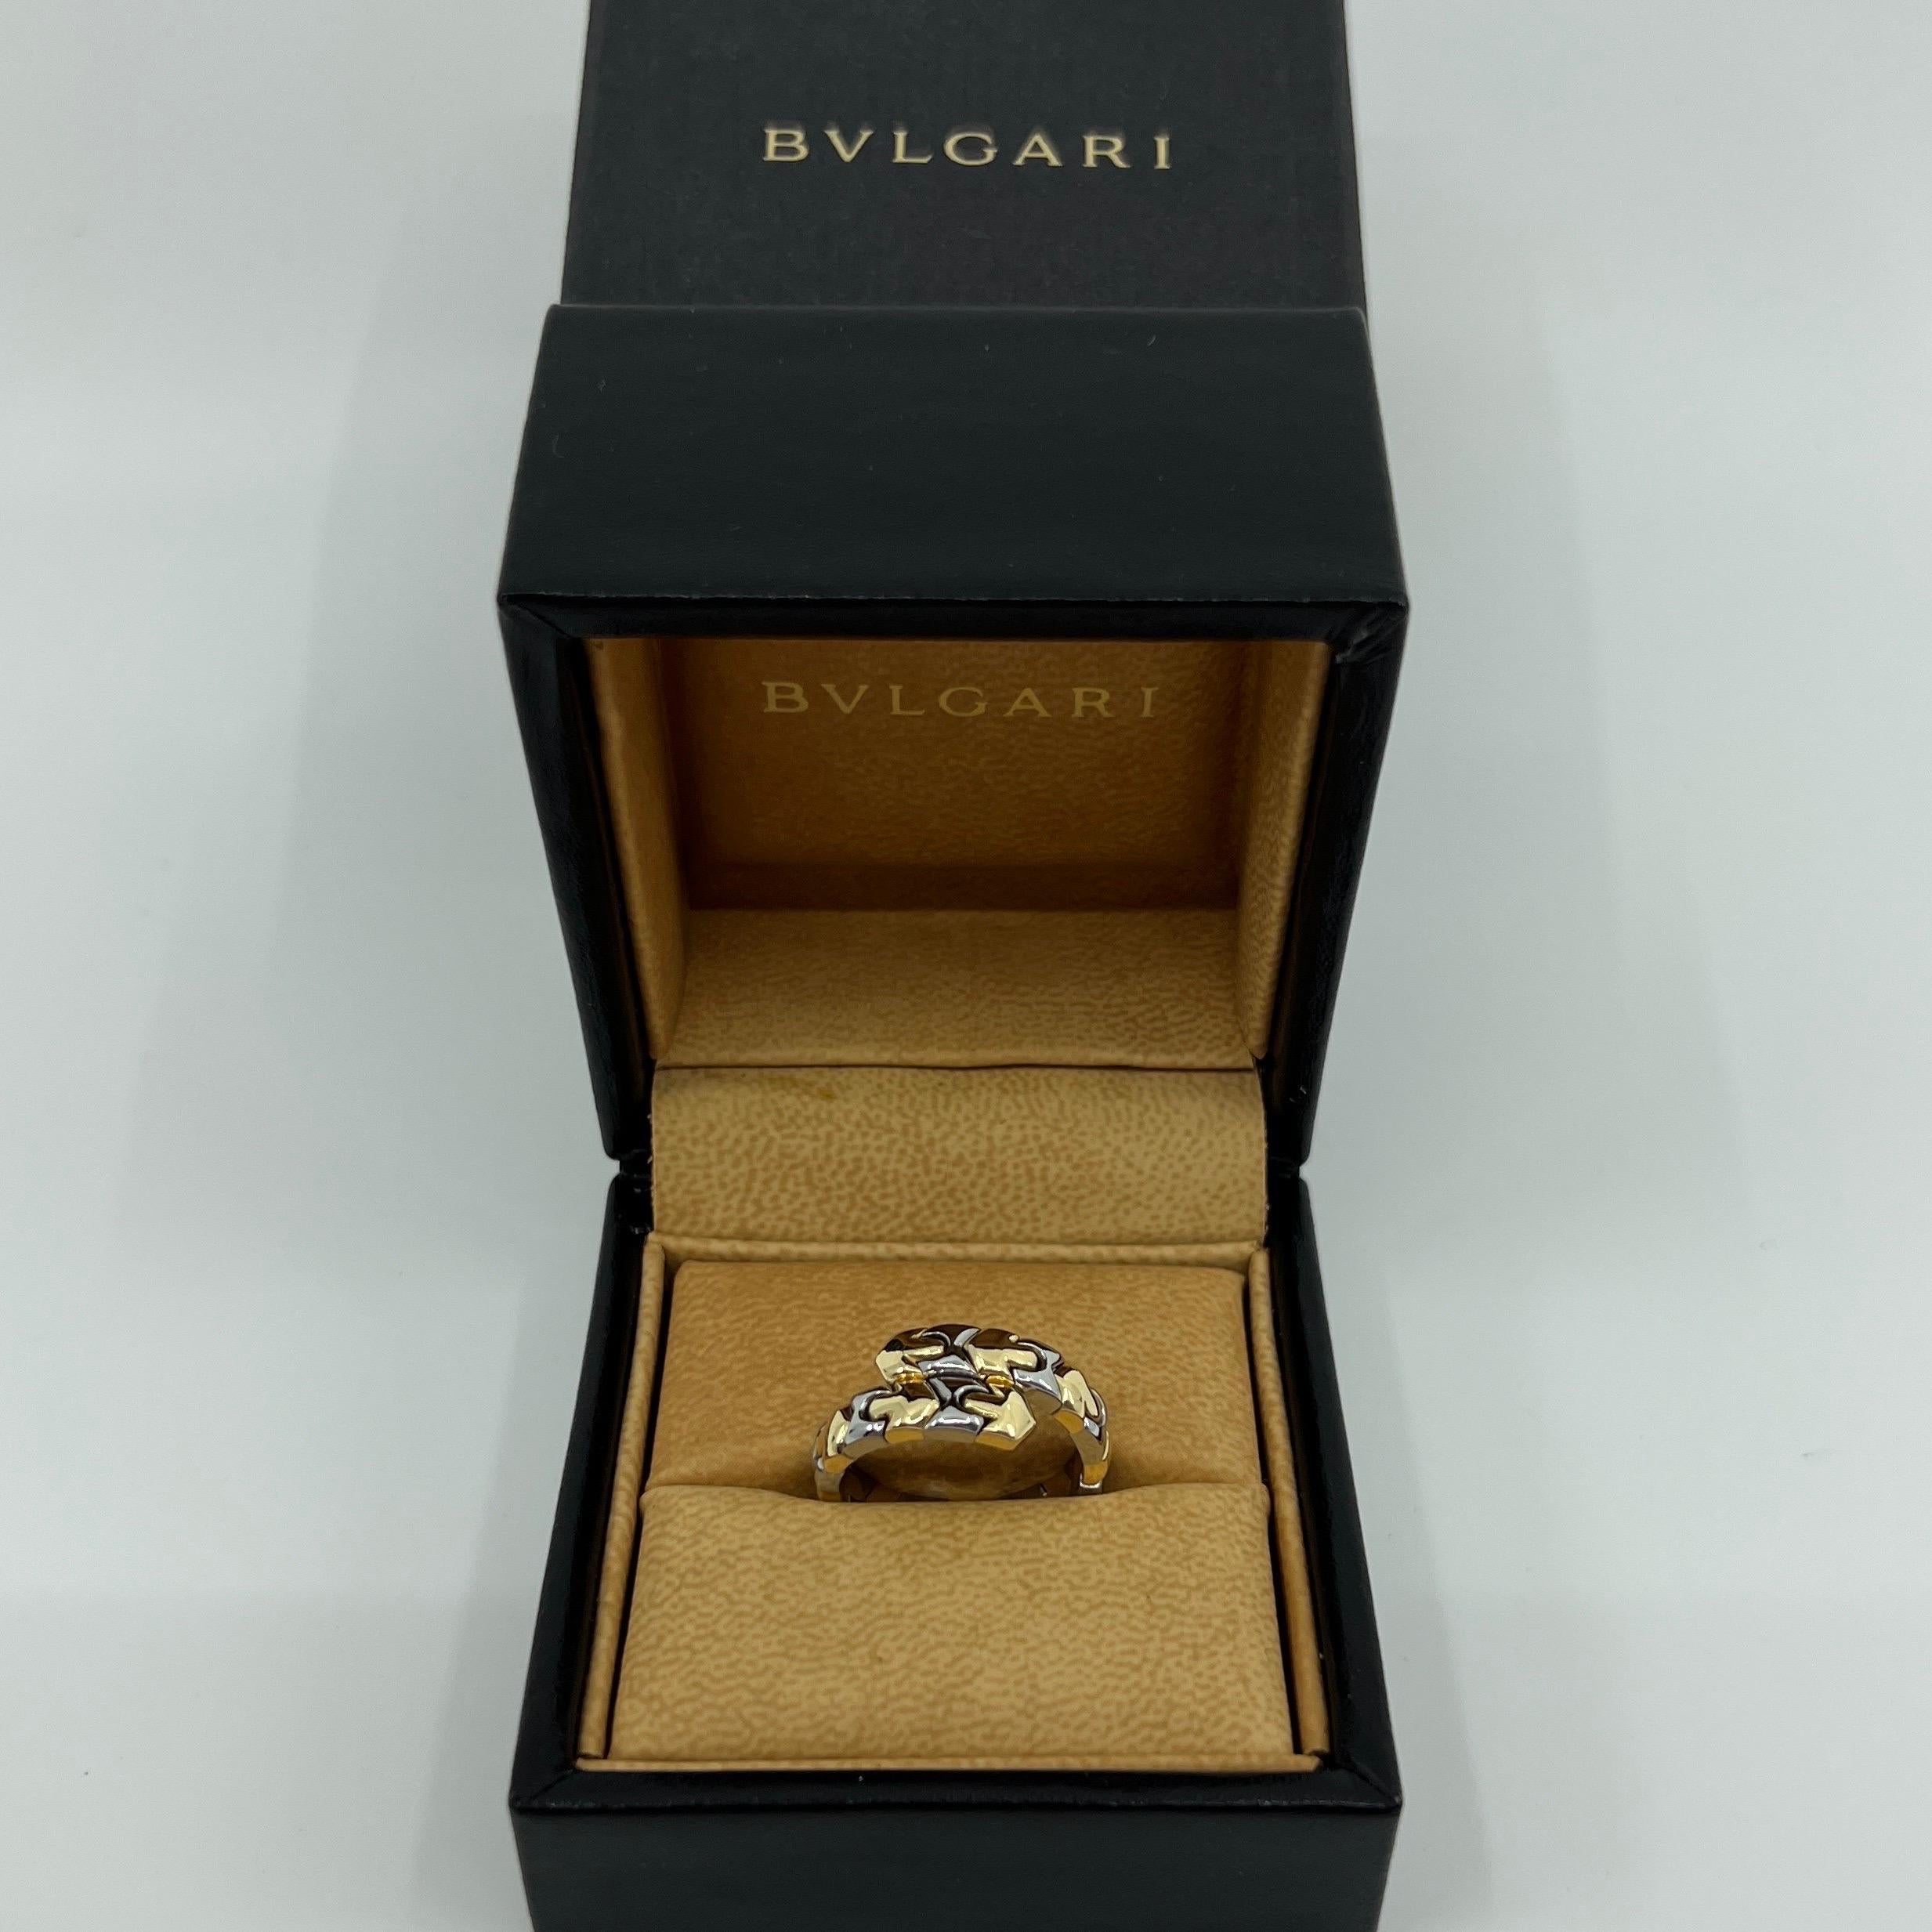 Très rare Vintage Bvlgari Alveare 18k White & Yellow Gold Spring Snake Ring.

Magnifique bague Bvlgari Alveare vintage en métal mélangé et or, avec un design à ressort flexible.

Cette conception élégante et unique à ressort lui permet de s'adapter